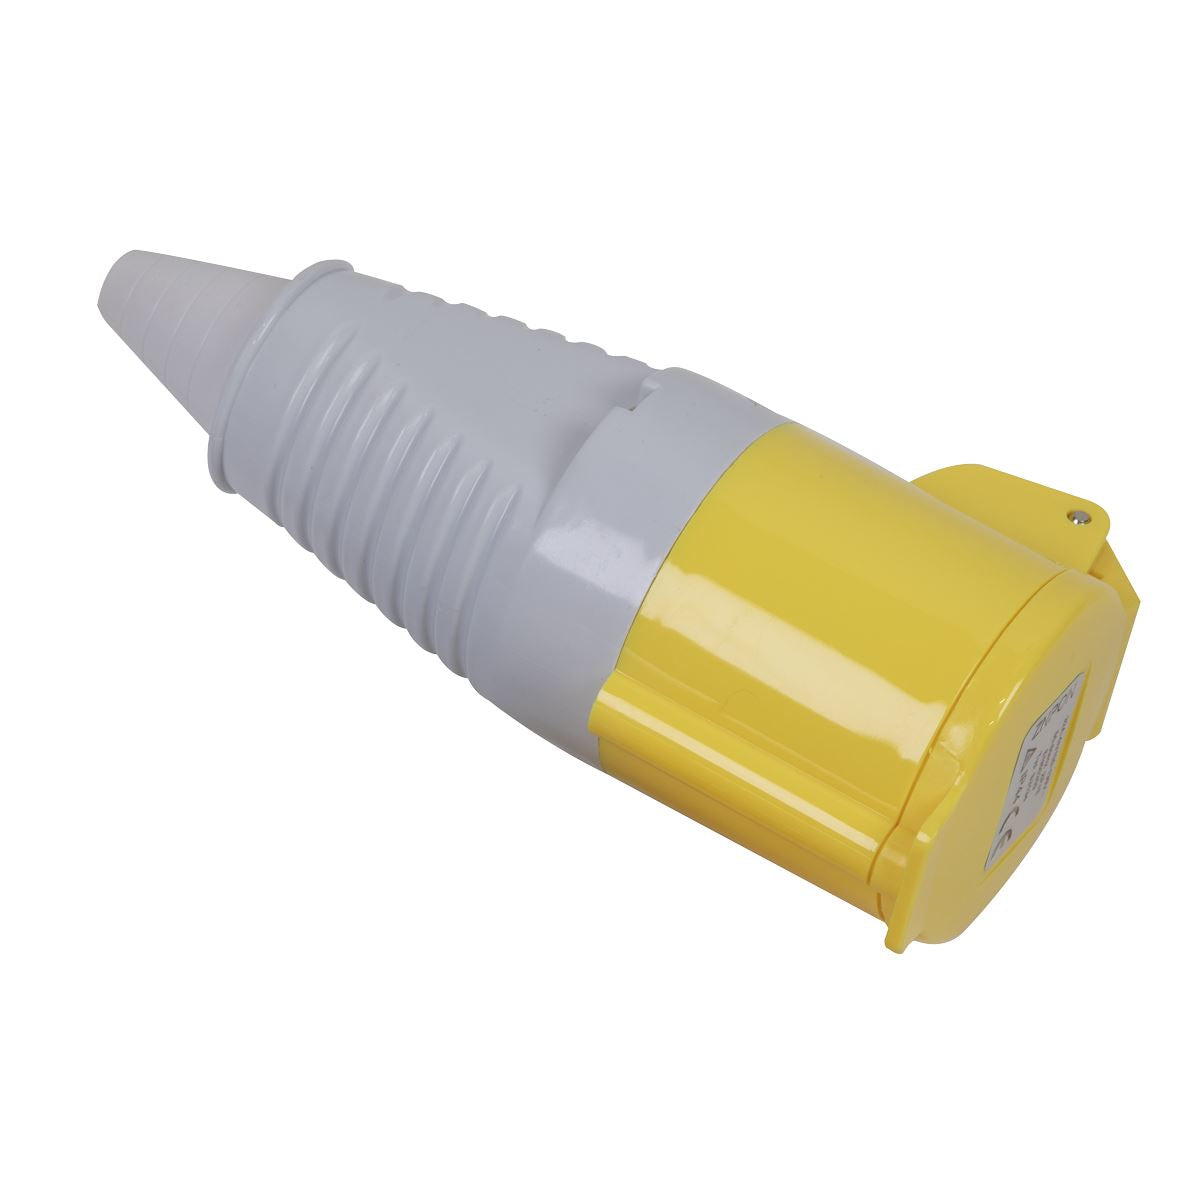 Sealey Yellow Socket 110V 16A